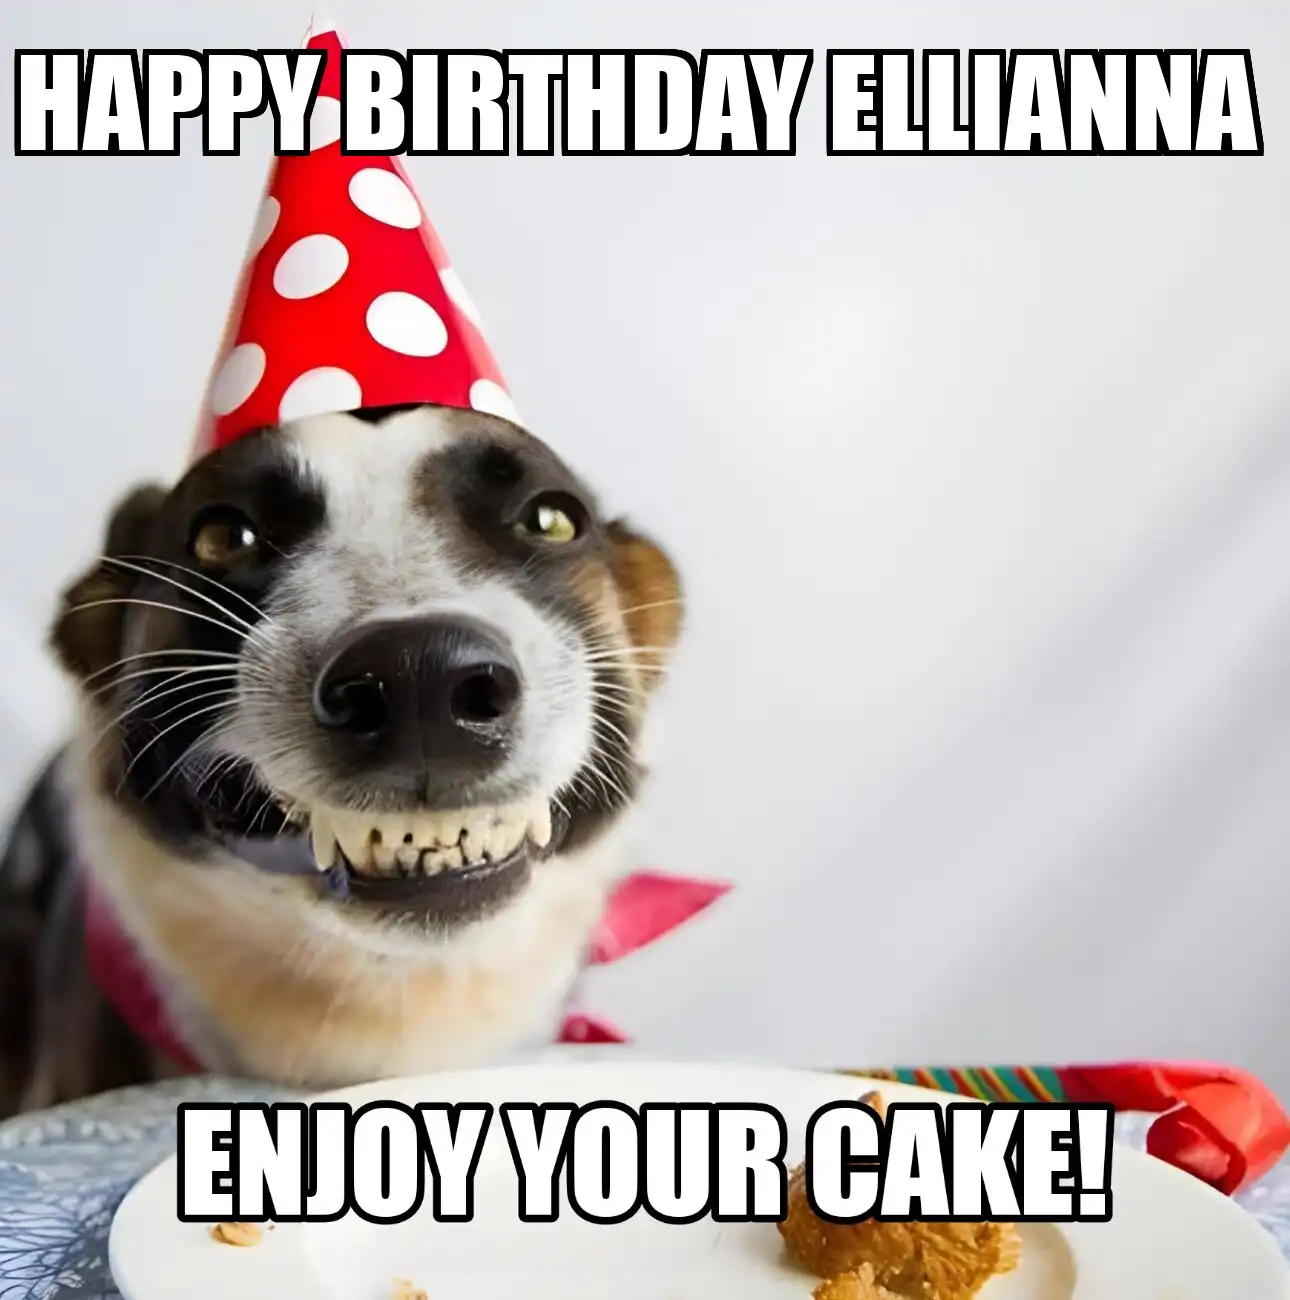 Happy Birthday Ellianna Enjoy Your Cake Dog Meme